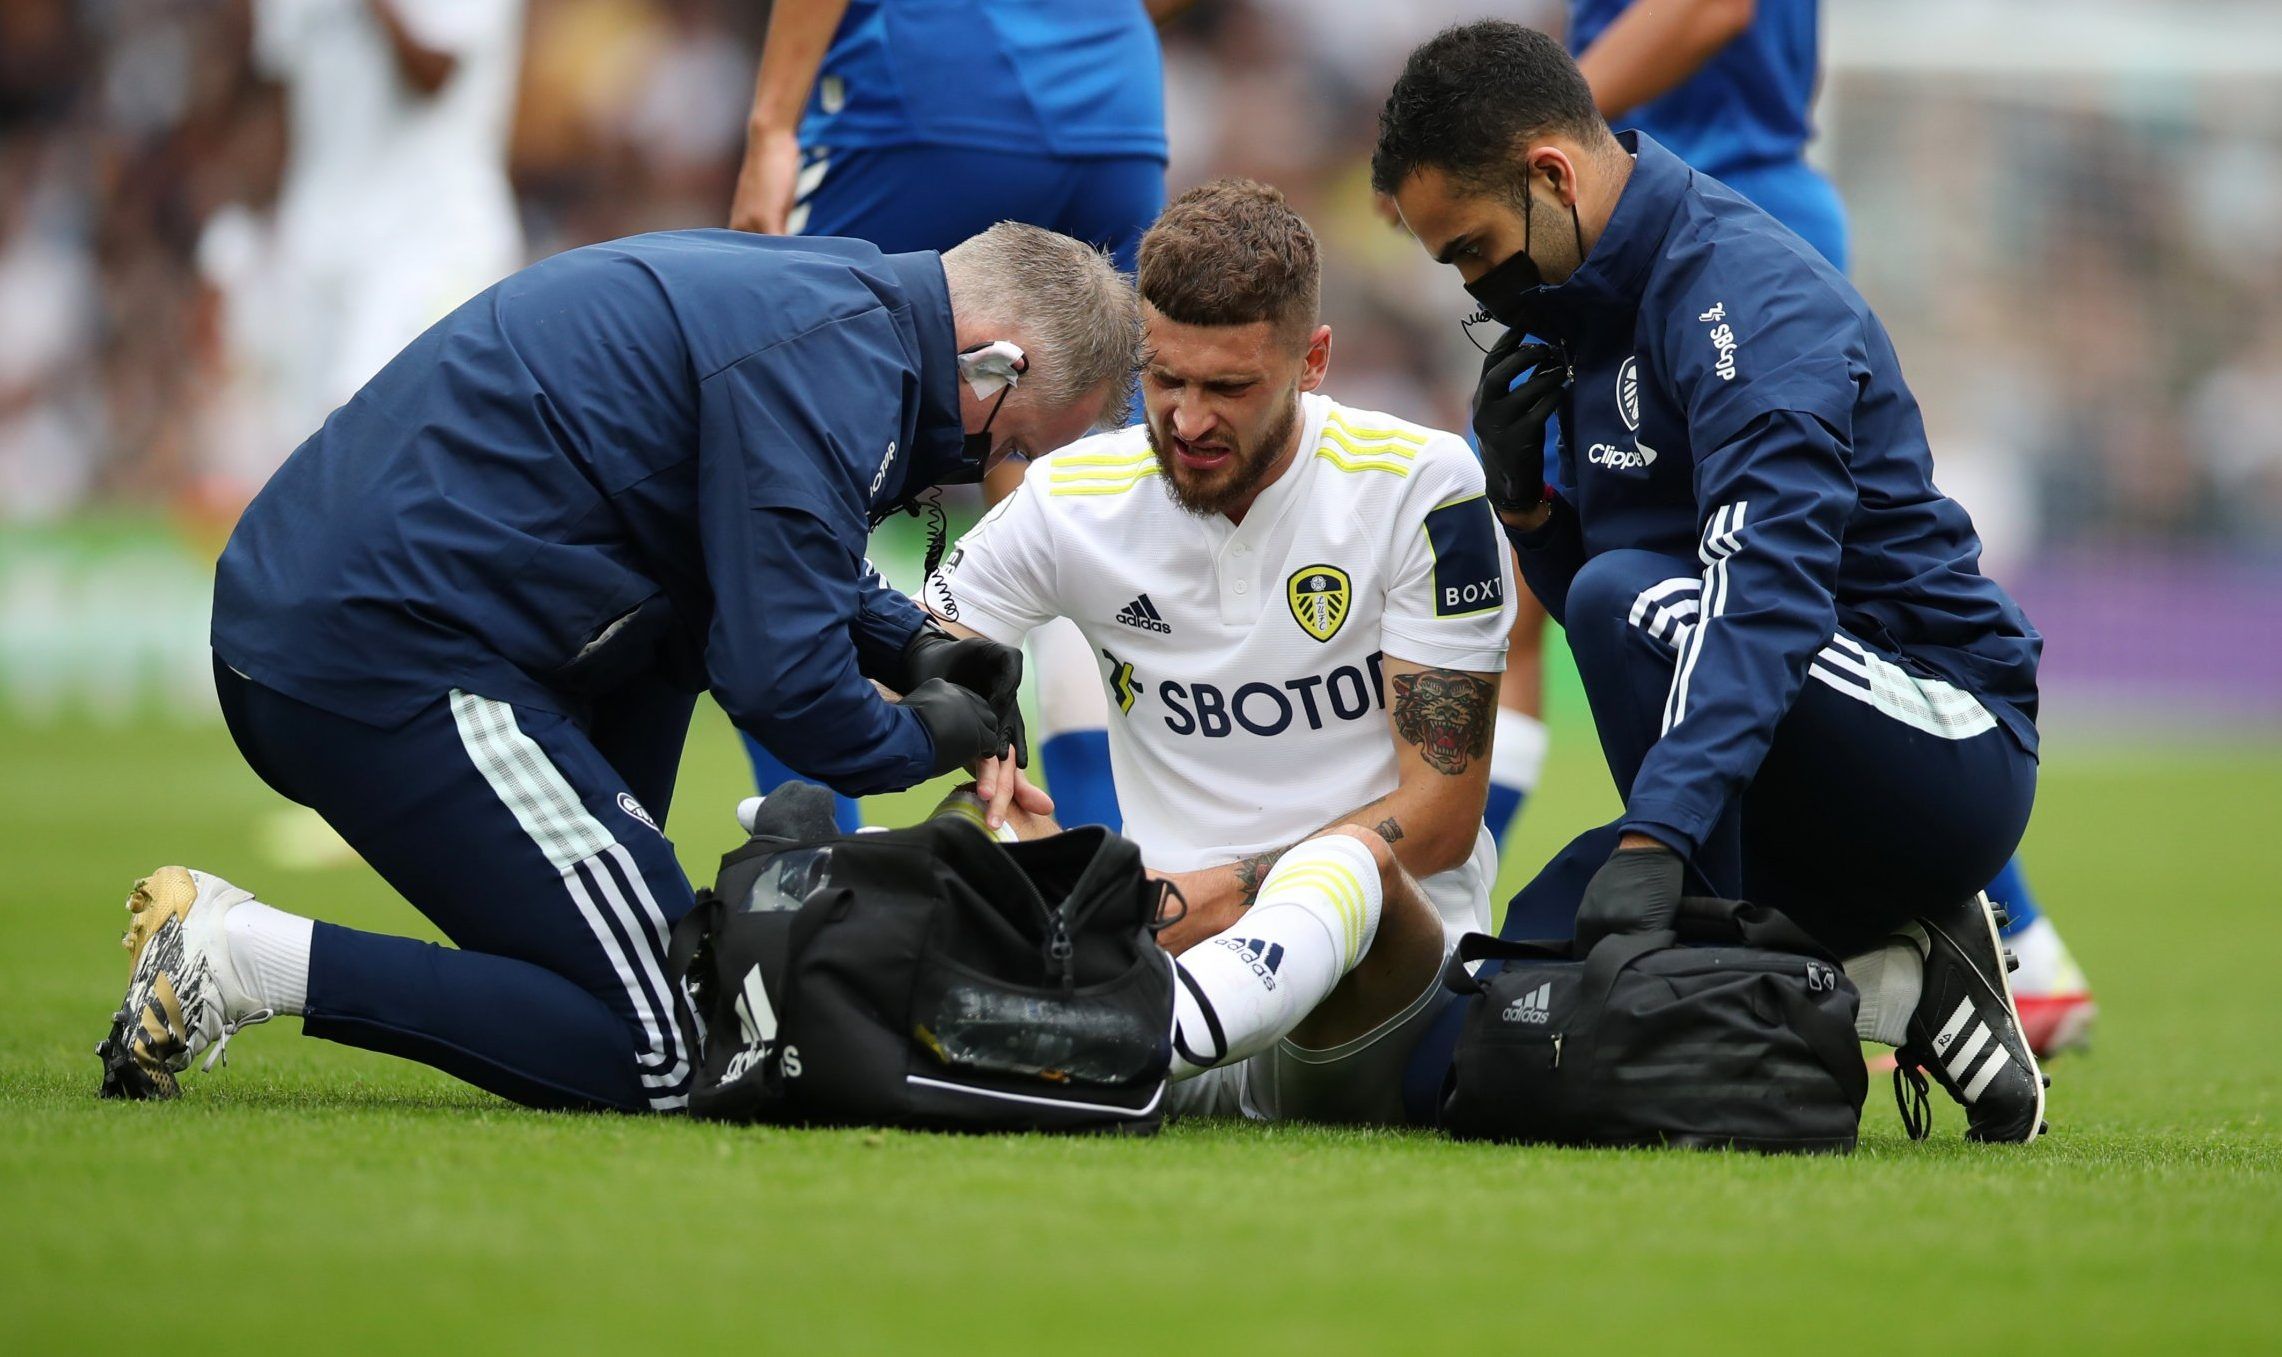 Leeds United midfielder Mateusz Klich receives treatment during Premier League clash vs Everton